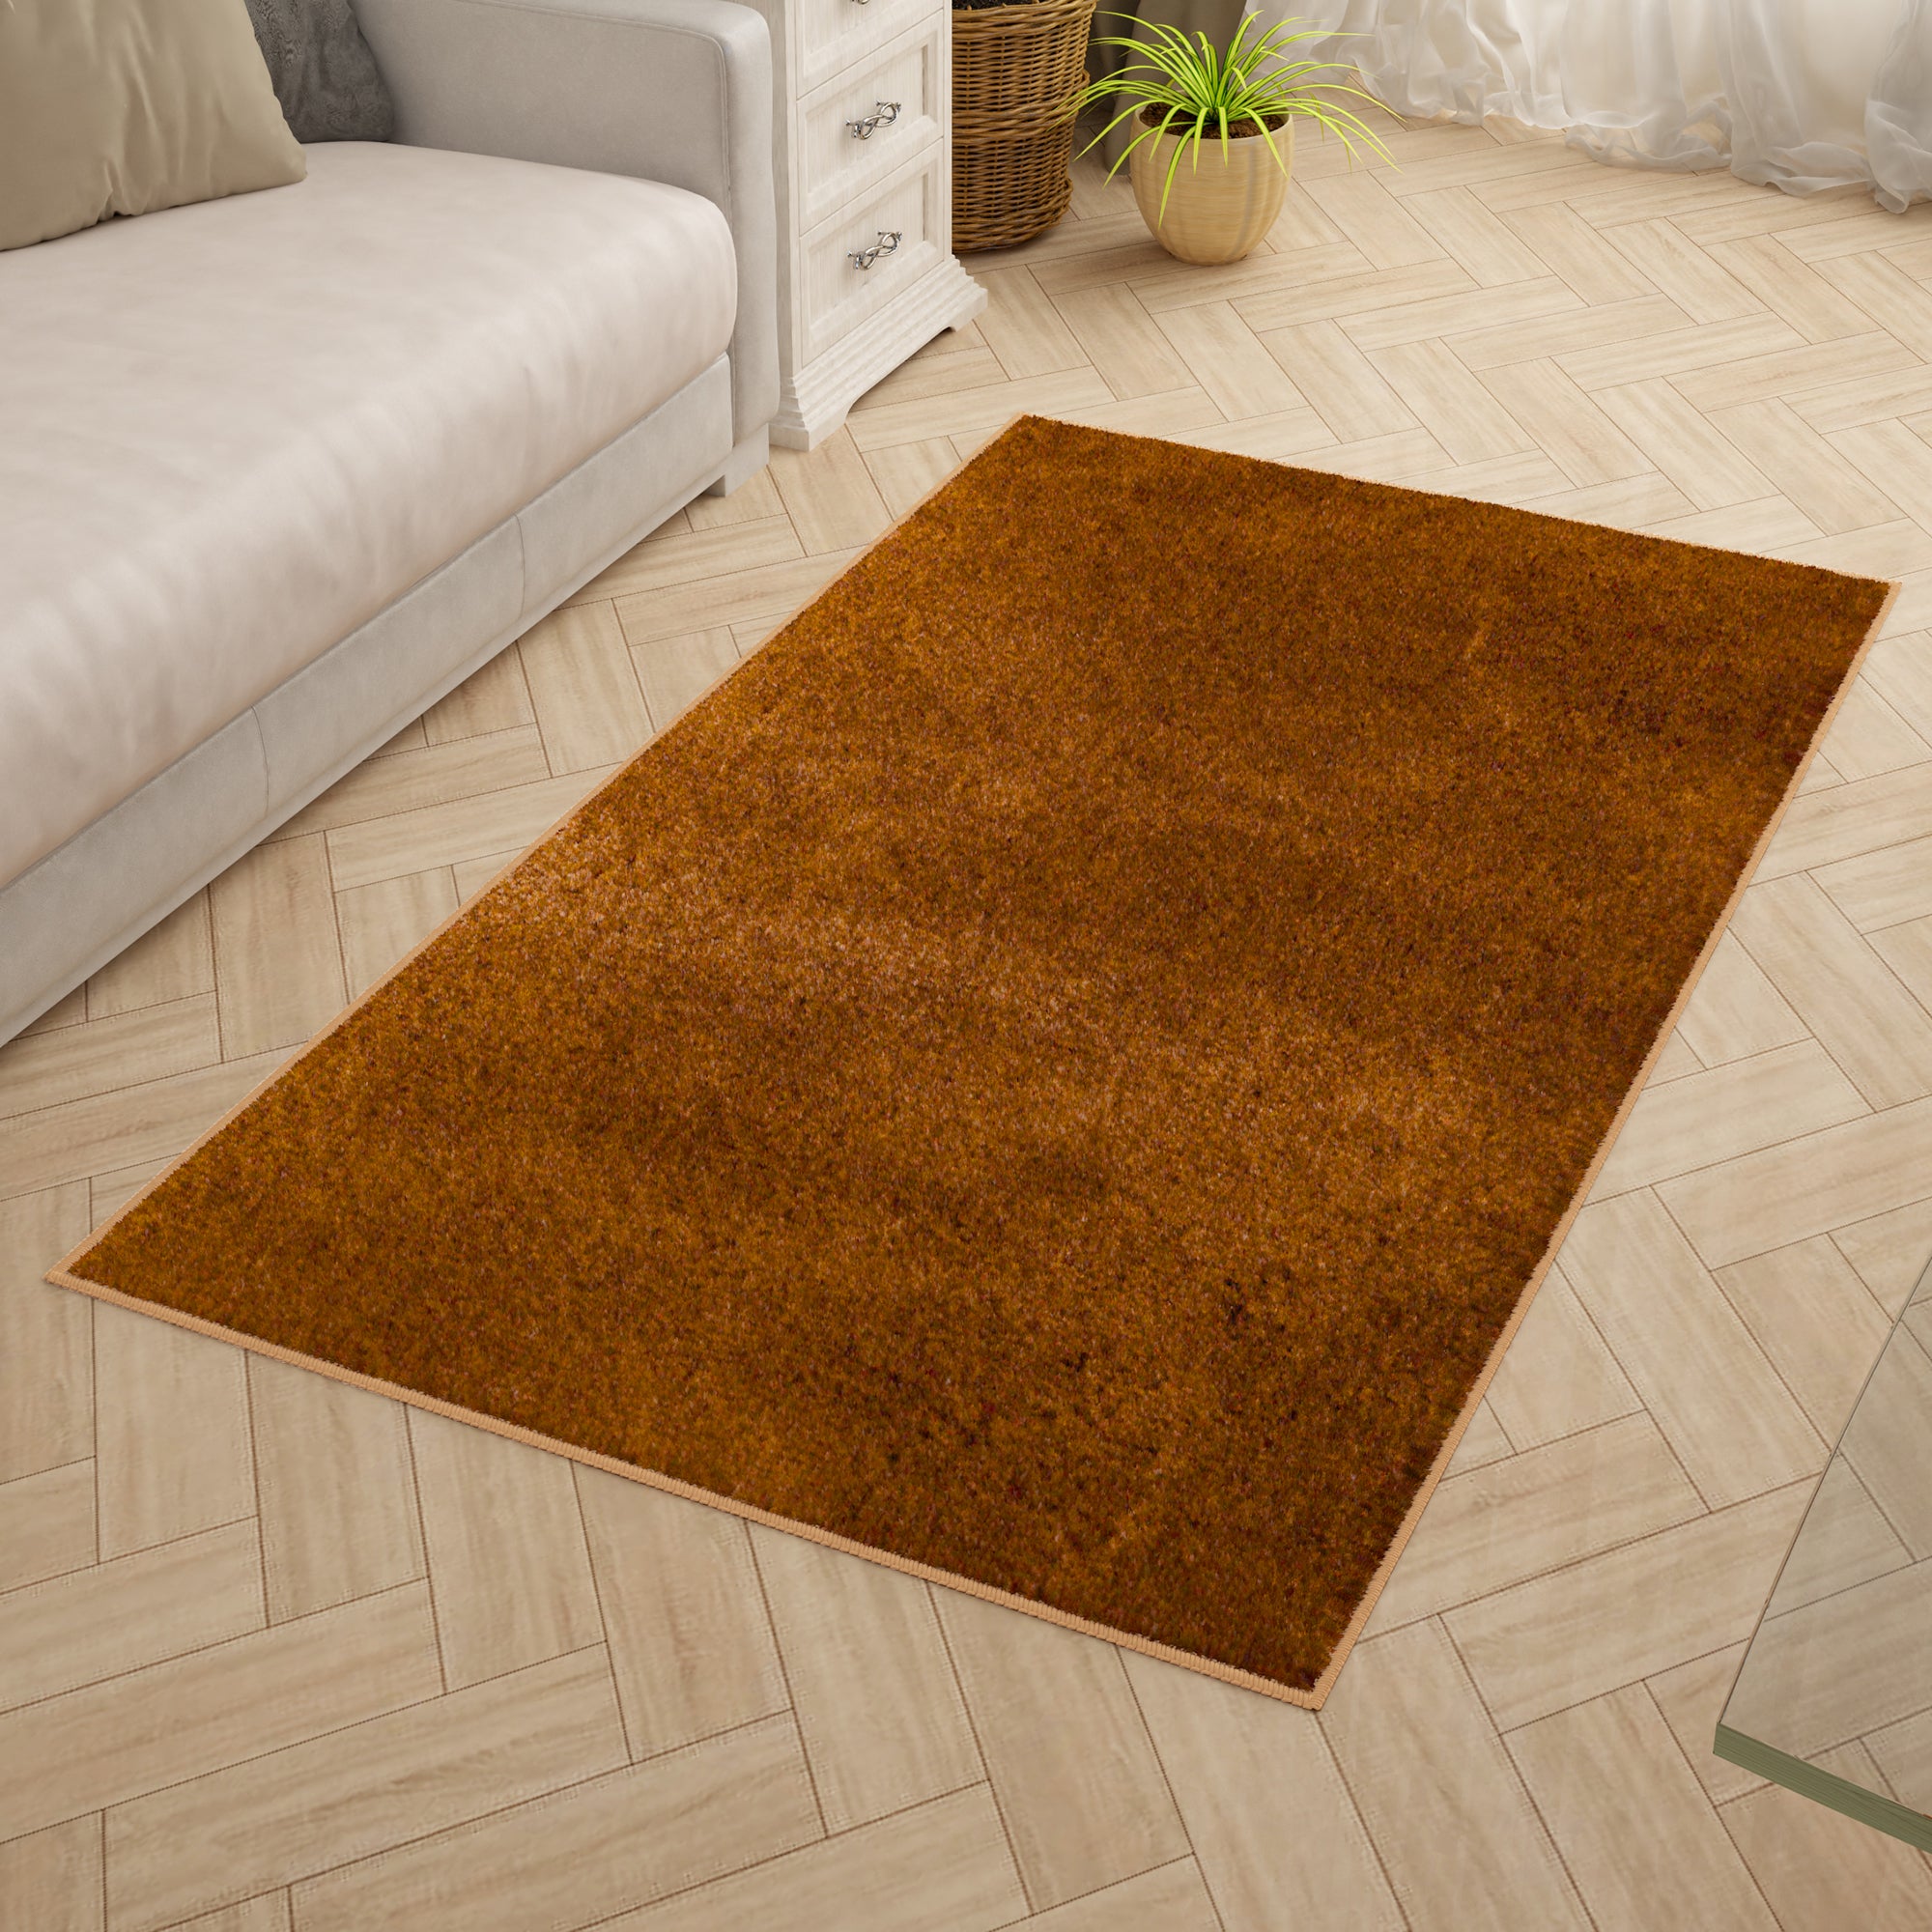 Solid Pattern Brownish Orange Carpet for Living Room & Bedroom